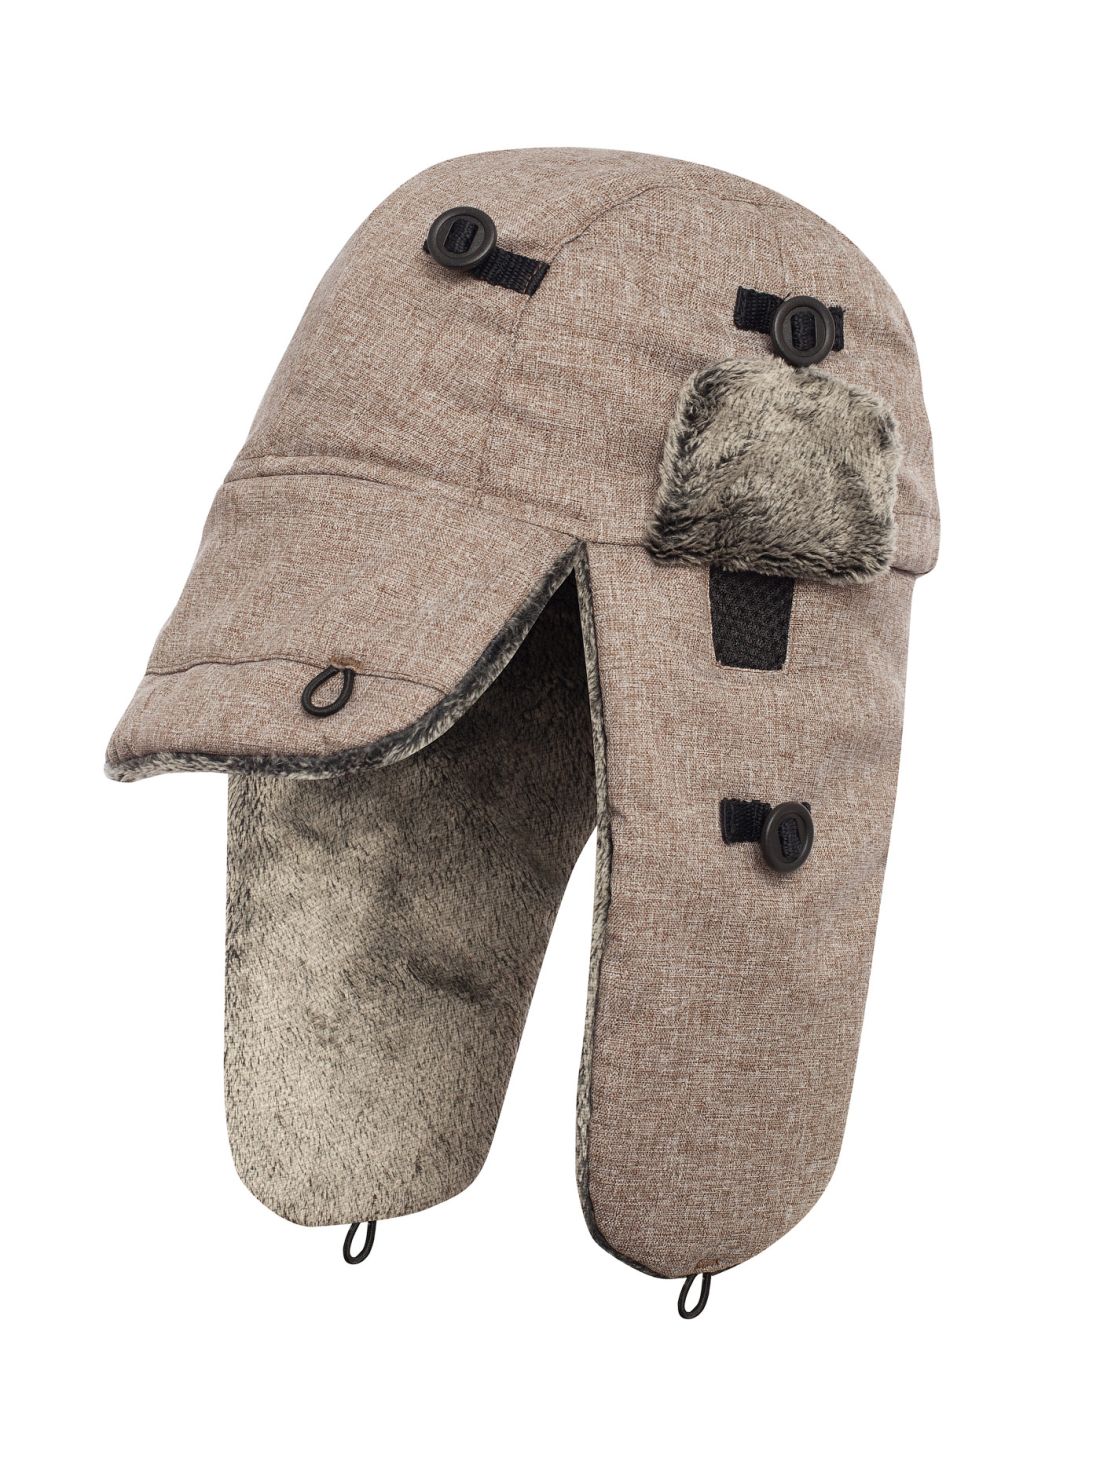 Шапка со специальными слуховыми вставками из сетки Bask Arctic Hat Soft